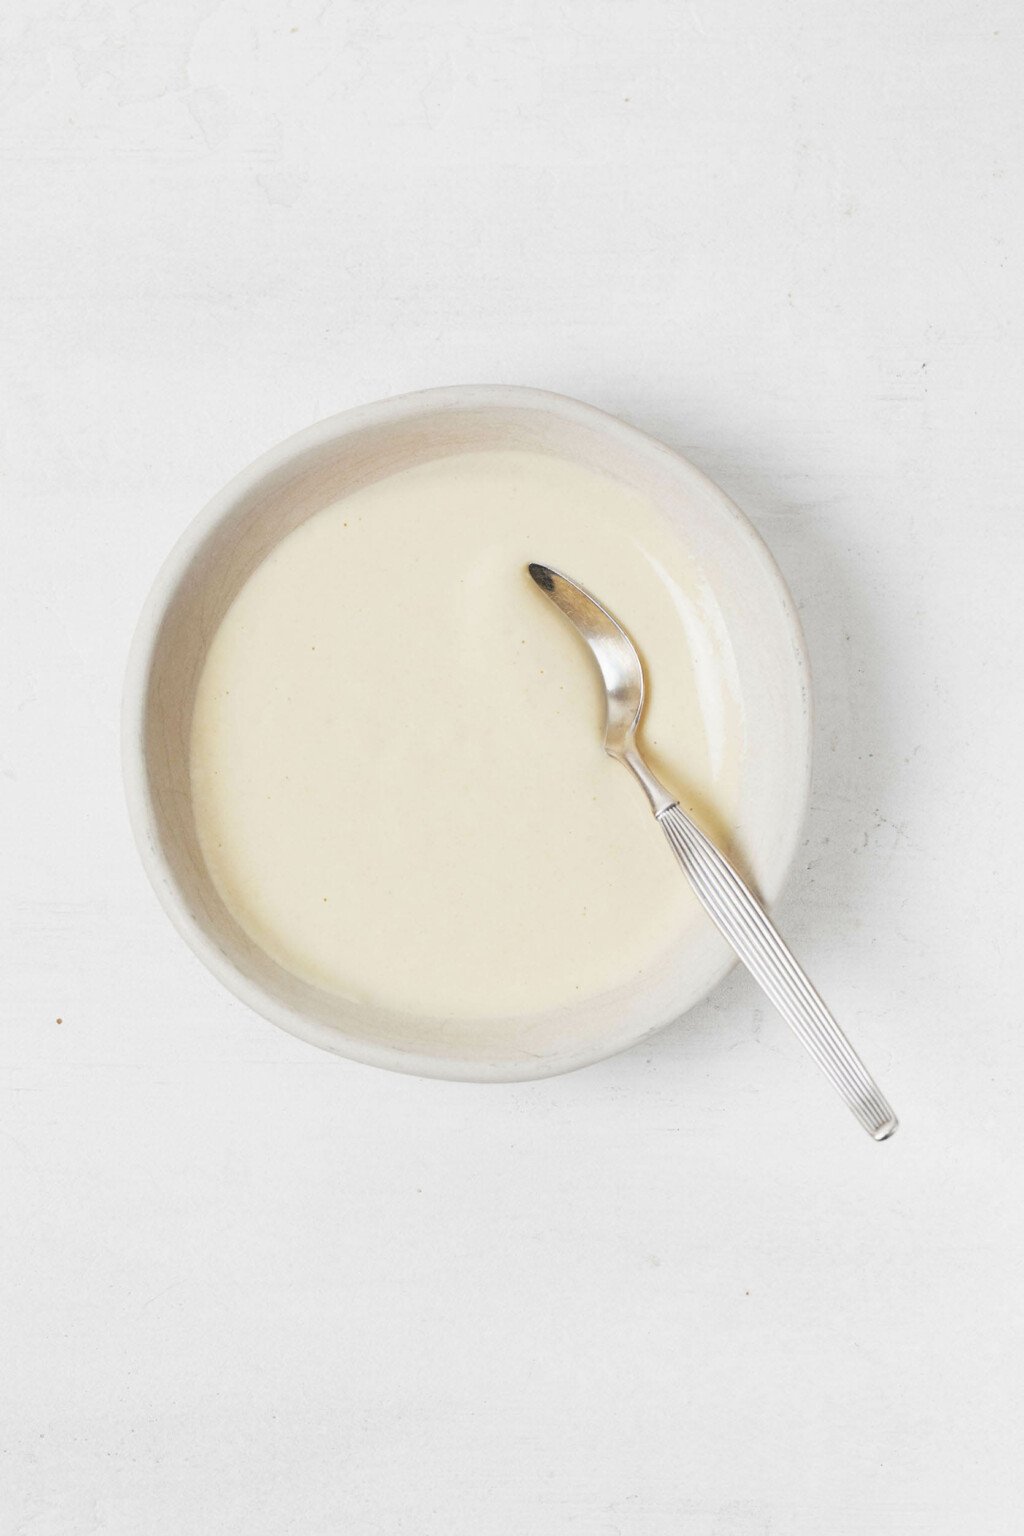 Ένα μικρό, λευκό μπολ με ντρέσινγκ ταχίνι λεμόνι Ντιζόν στηρίζεται σε μια λευκή επιφάνεια.